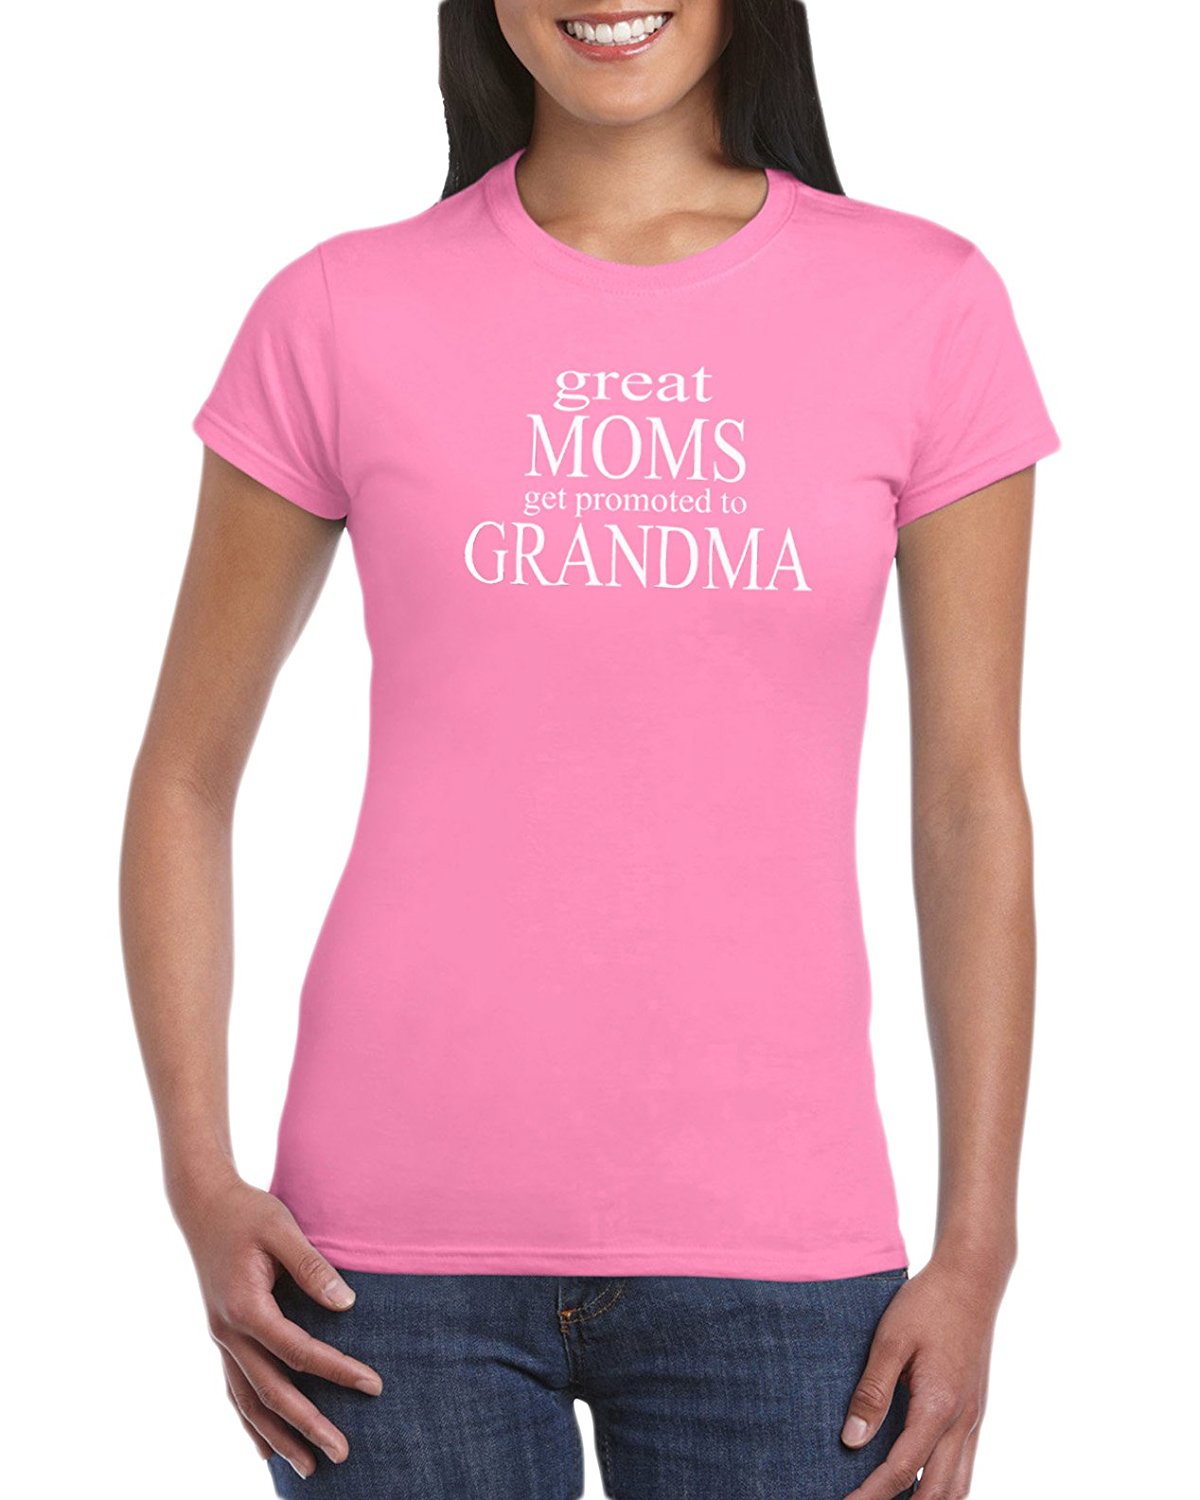 Gift Ideas for Moms, Women, New Moms and Grandmas